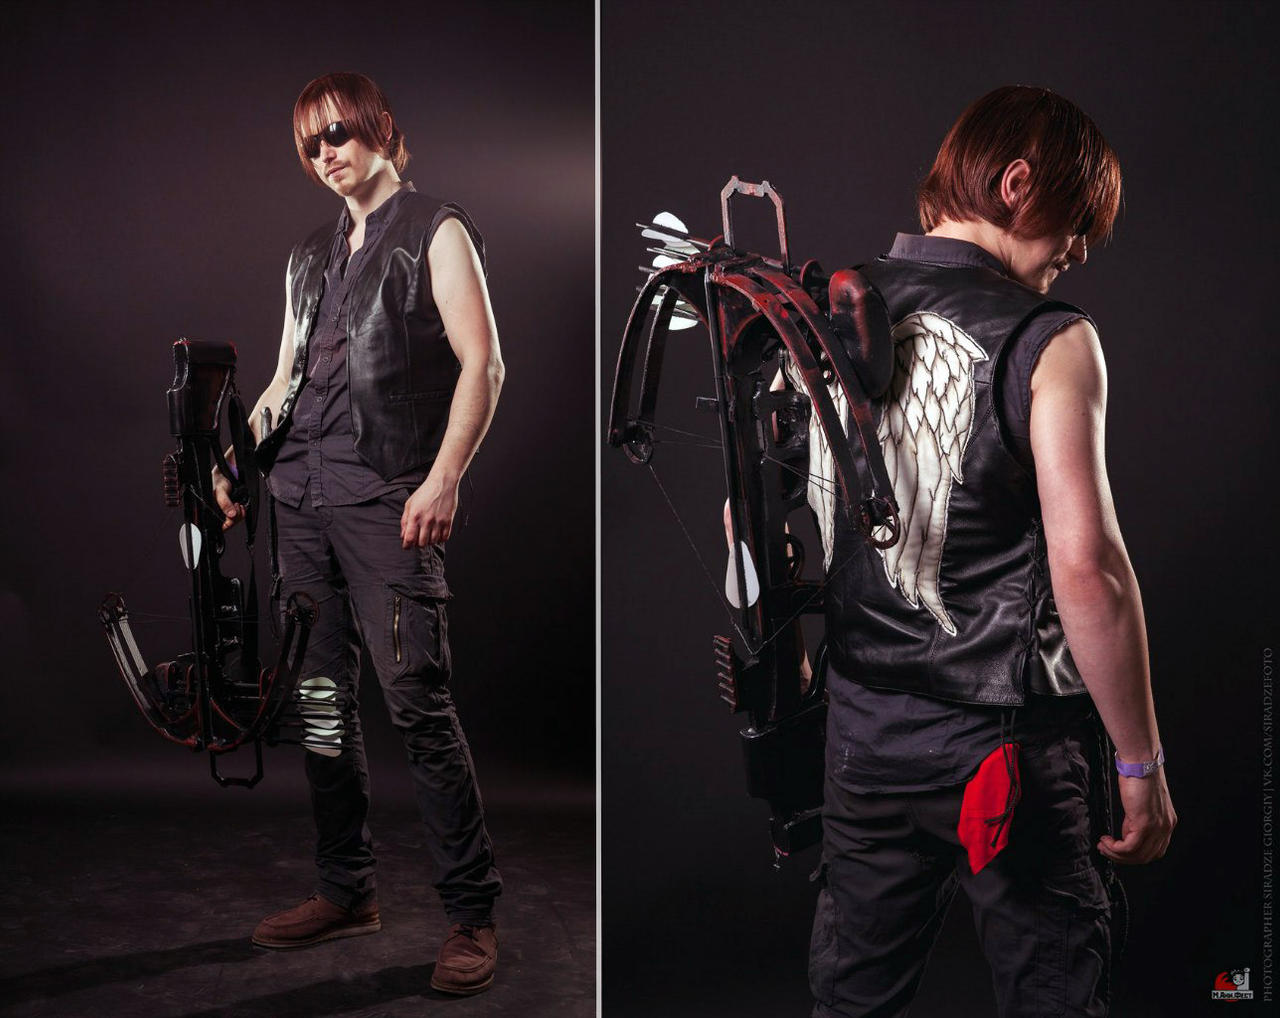 Walking Dead: Daryl Dixon cosplay by Aoki-Lifestream on DeviantArt
